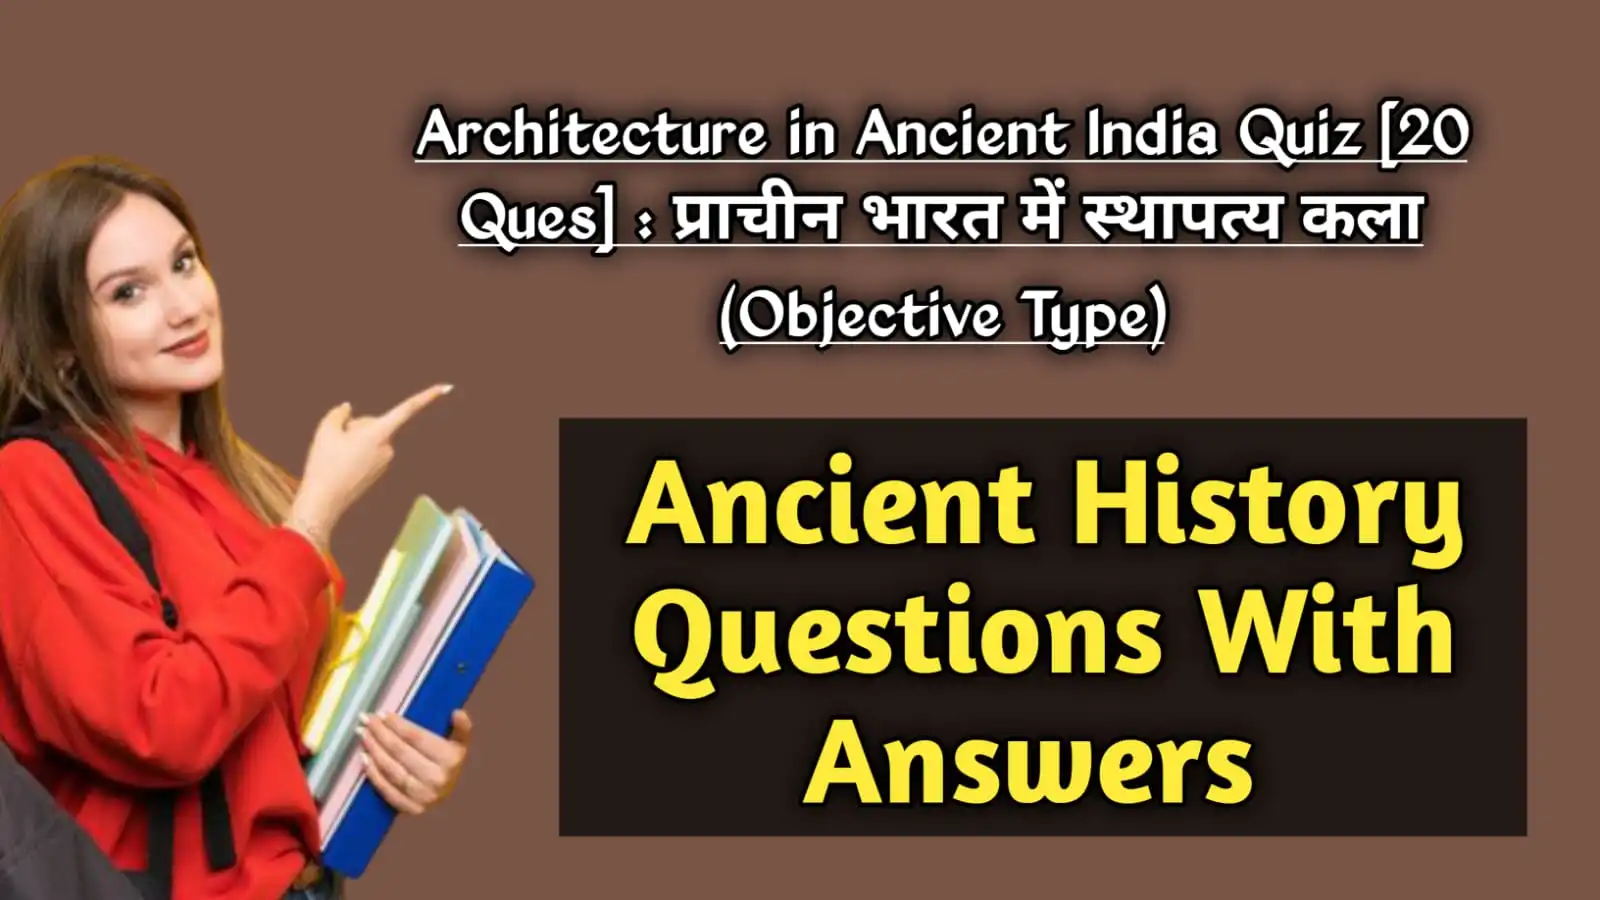 Architecture in Ancient India Quiz